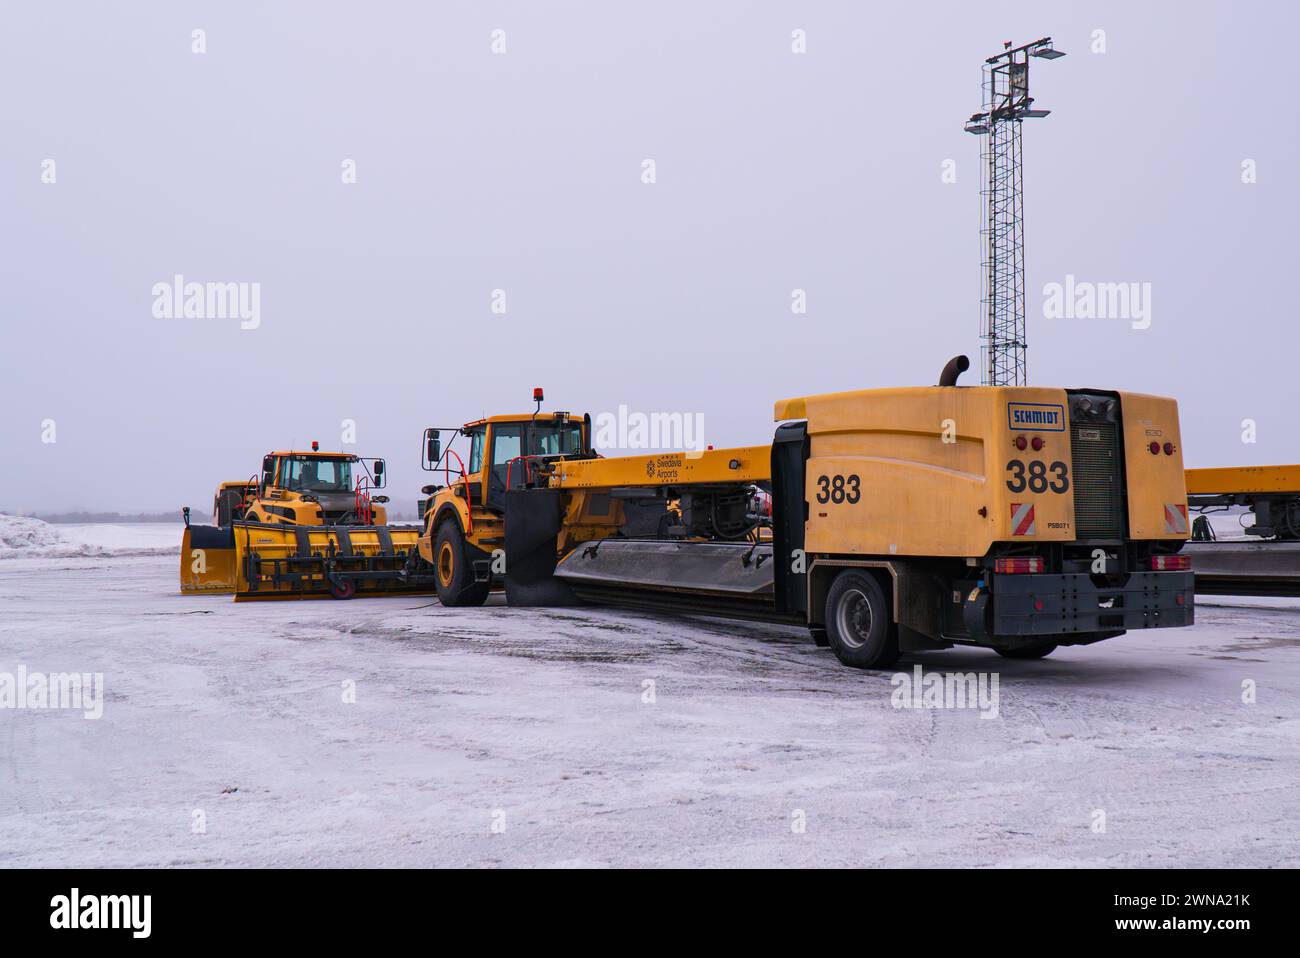 Eine Pflug-, Kehrer- und Blasmaschine (Schneepflug) am Flughafen Umeå, Swedavia Flughäfen, gelb, von Schmidt aus, wartet auf einen bevorstehenden Schneefall. Stockfoto